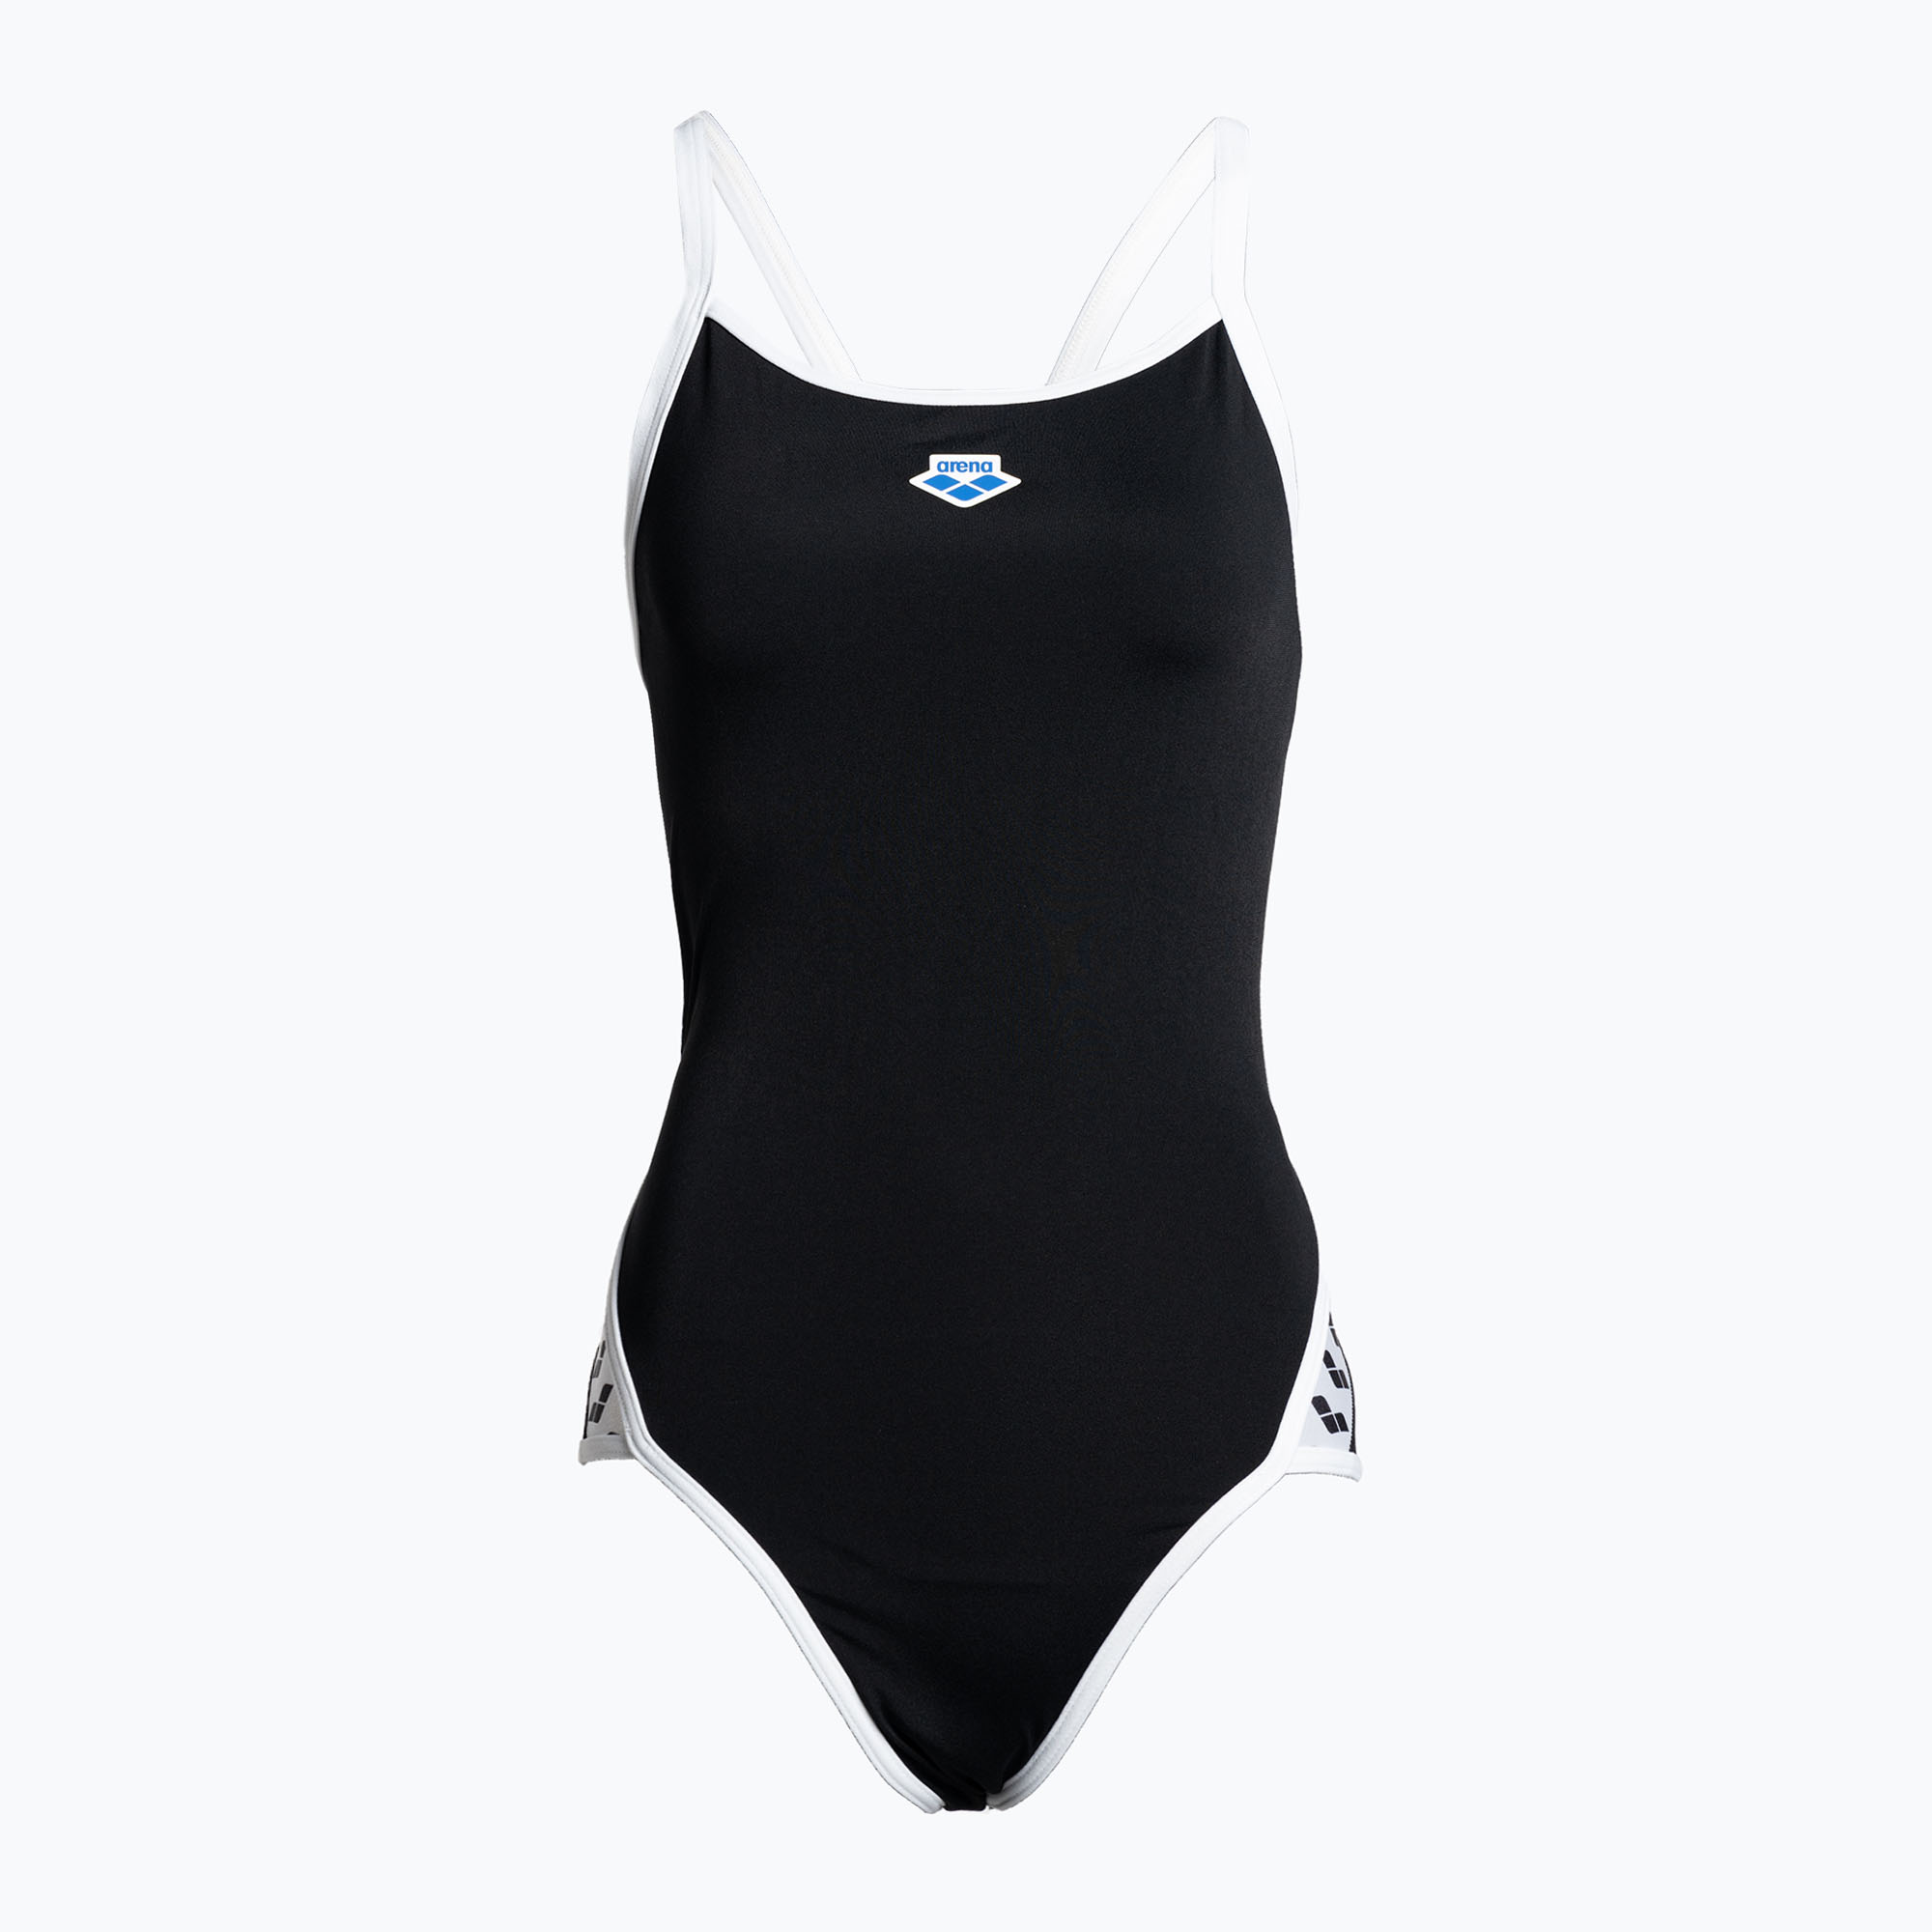 Дамски бански костюм от една част arena Icons Super Fly Back Solid black 005036/501